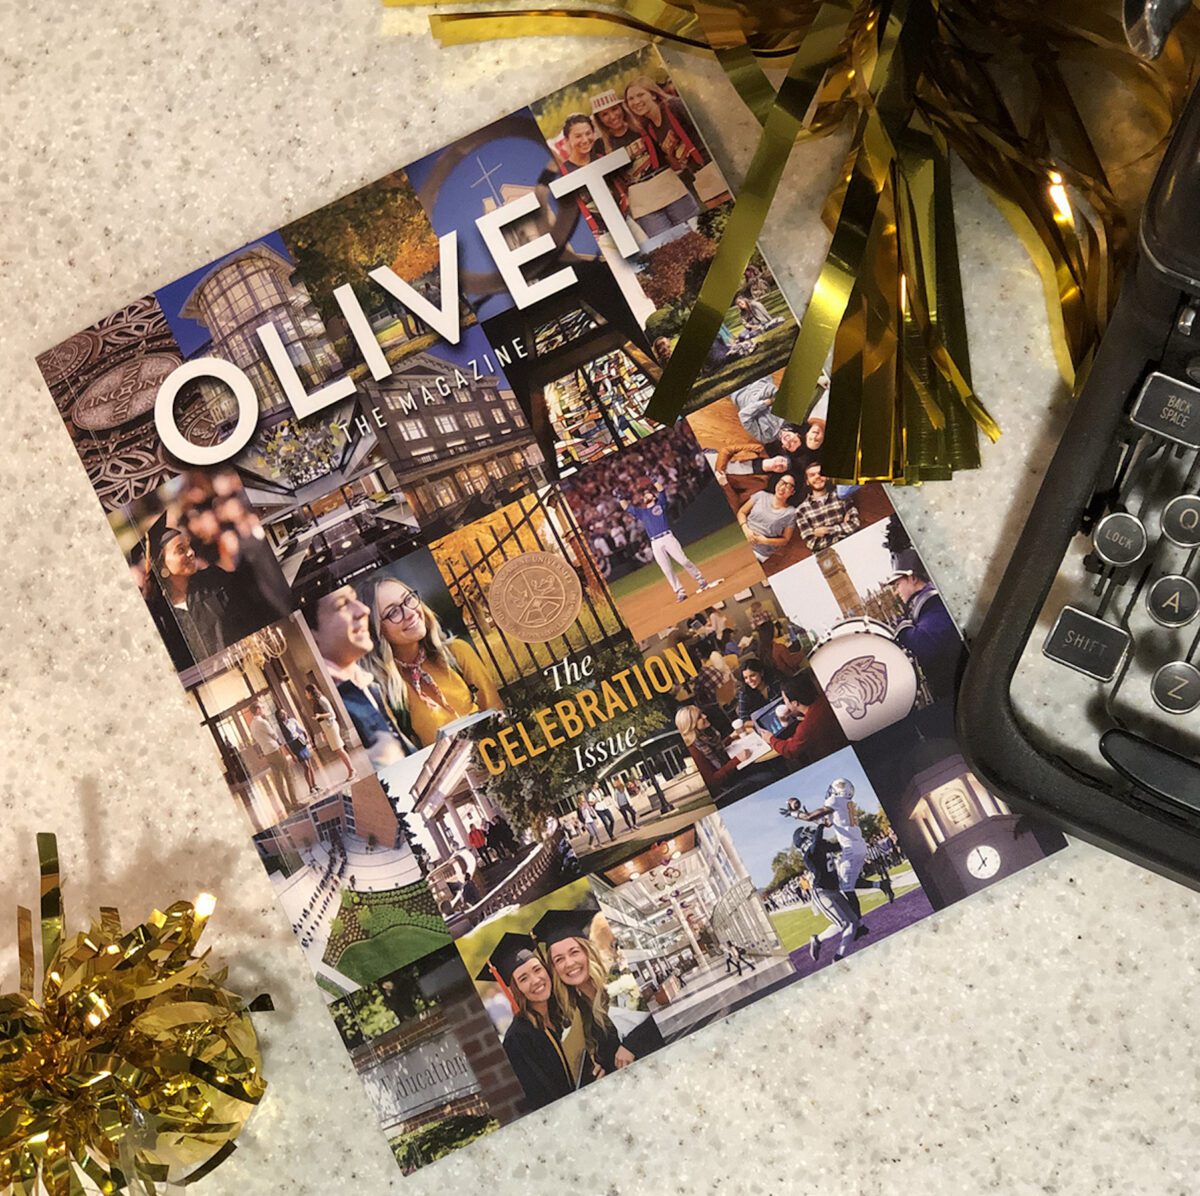 Olivet Magazine on table